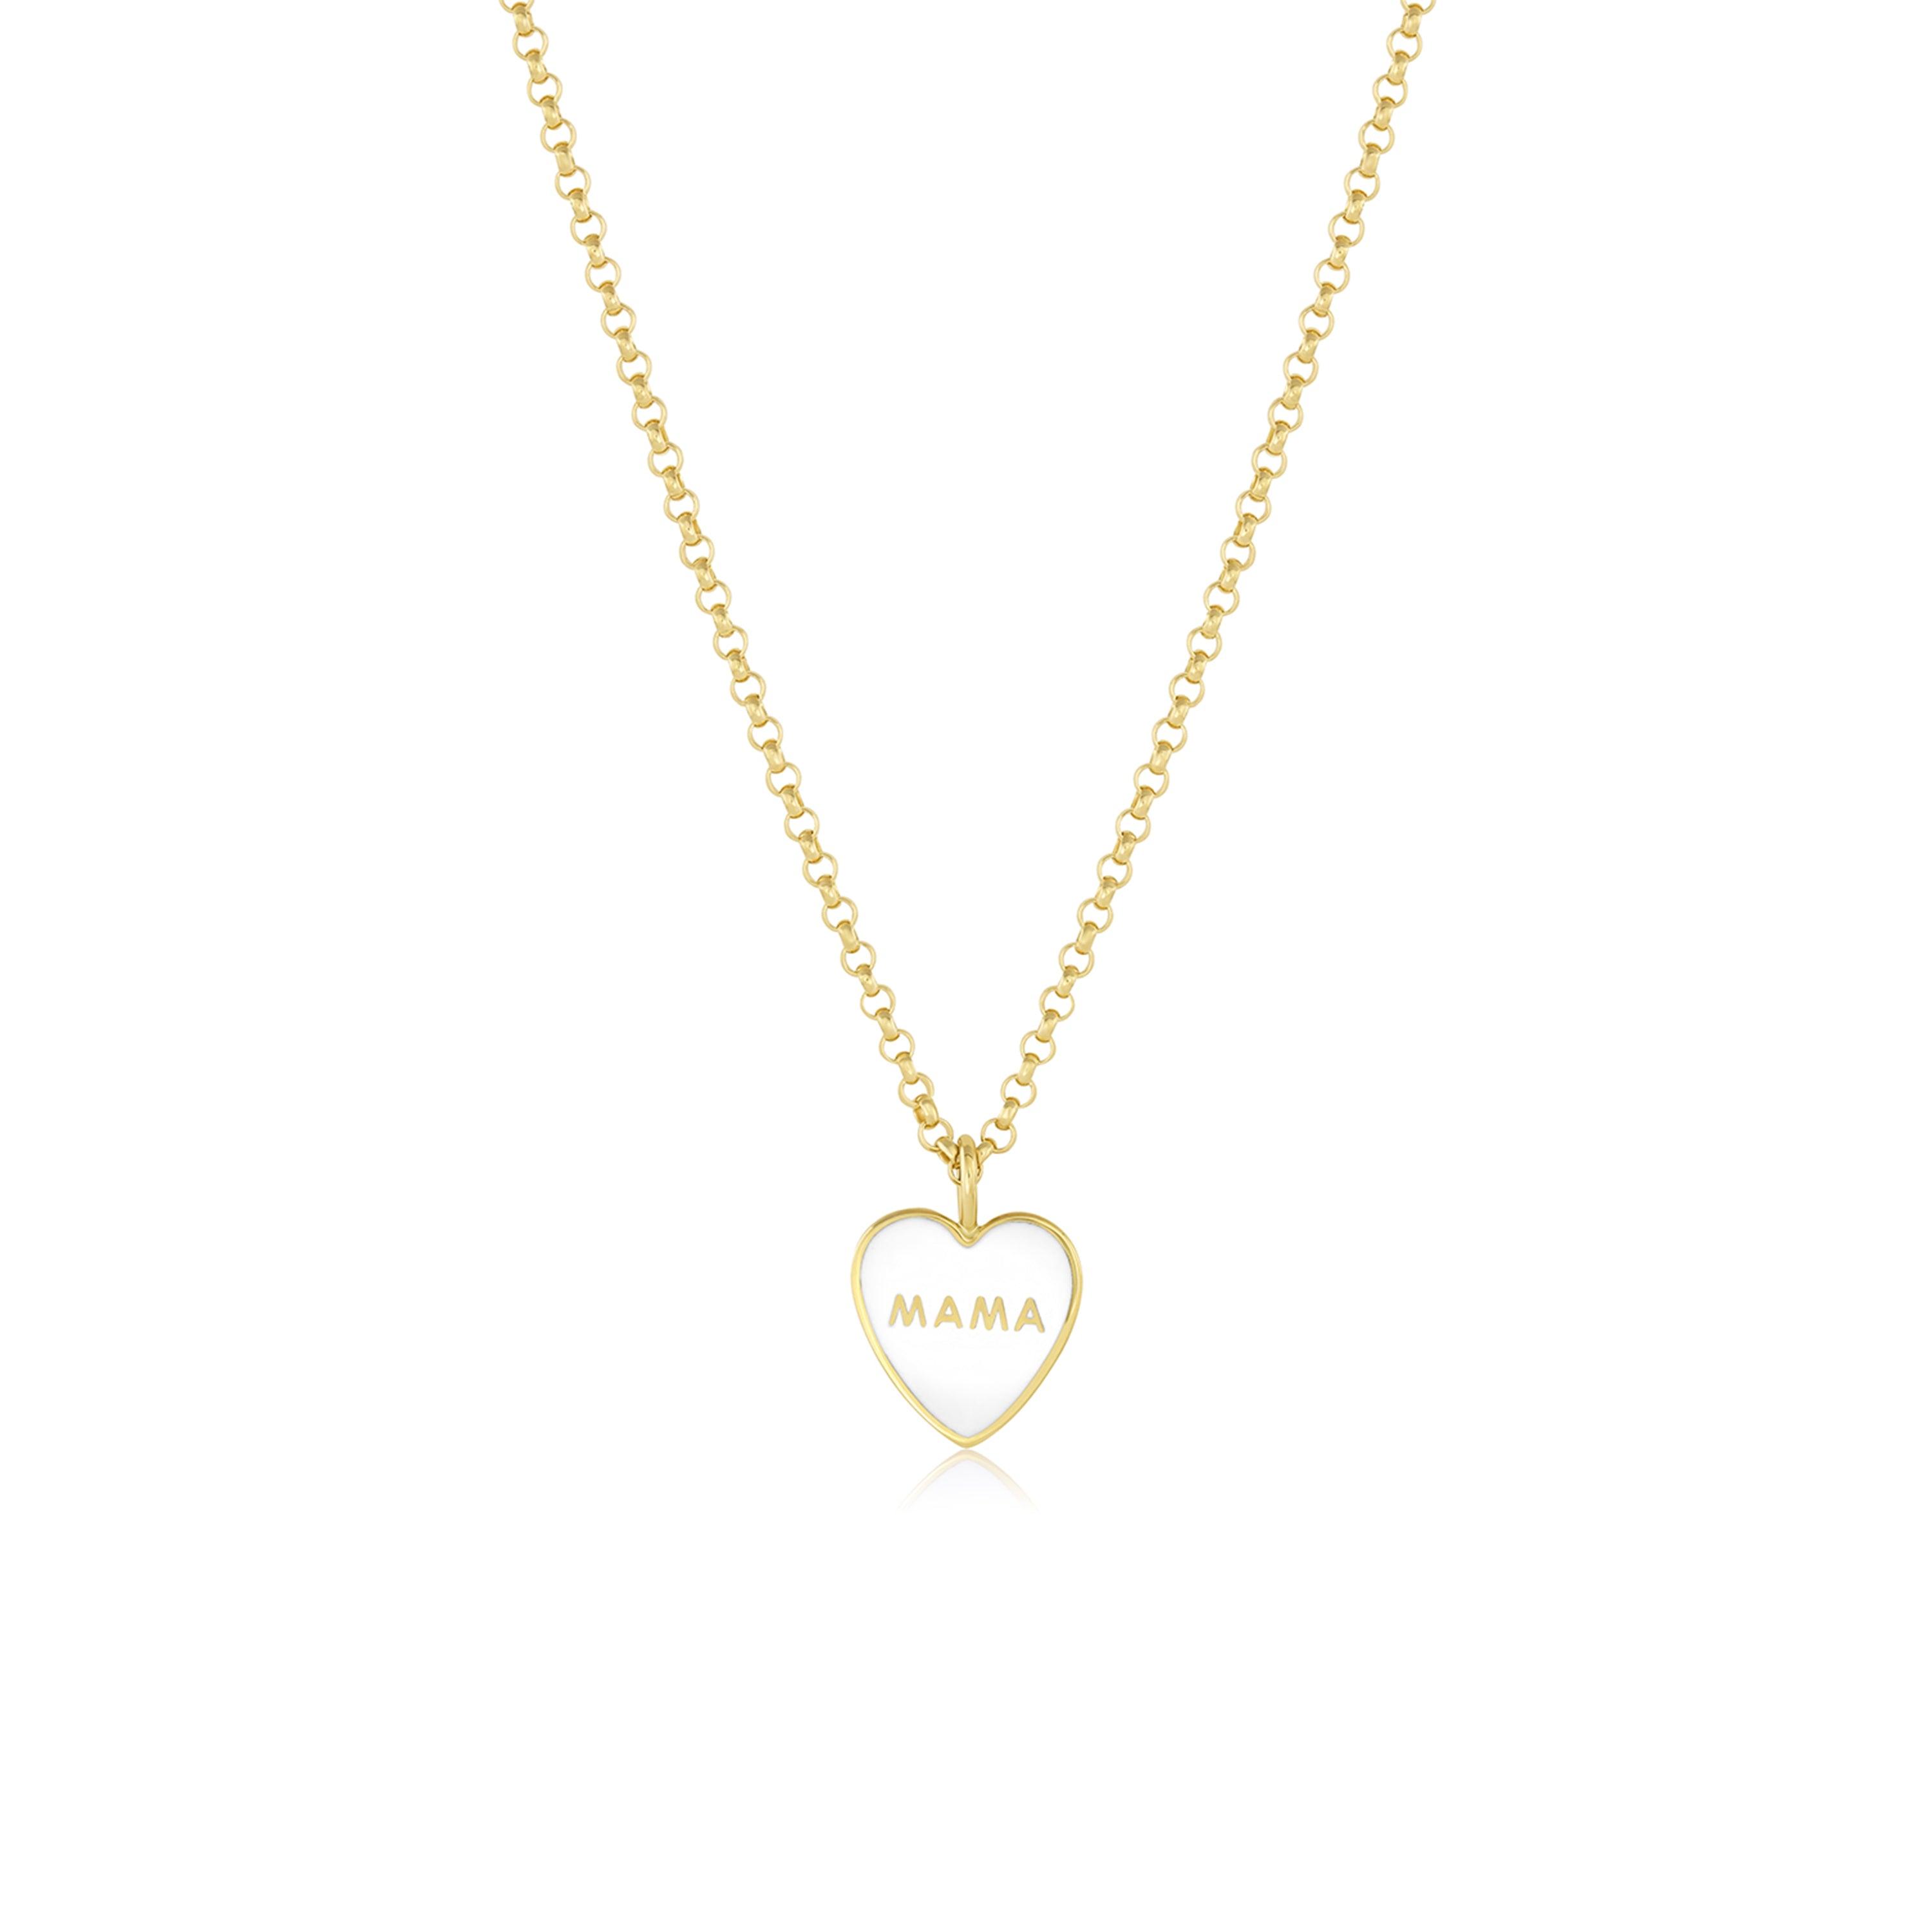 14K White Gold Heart Pendant